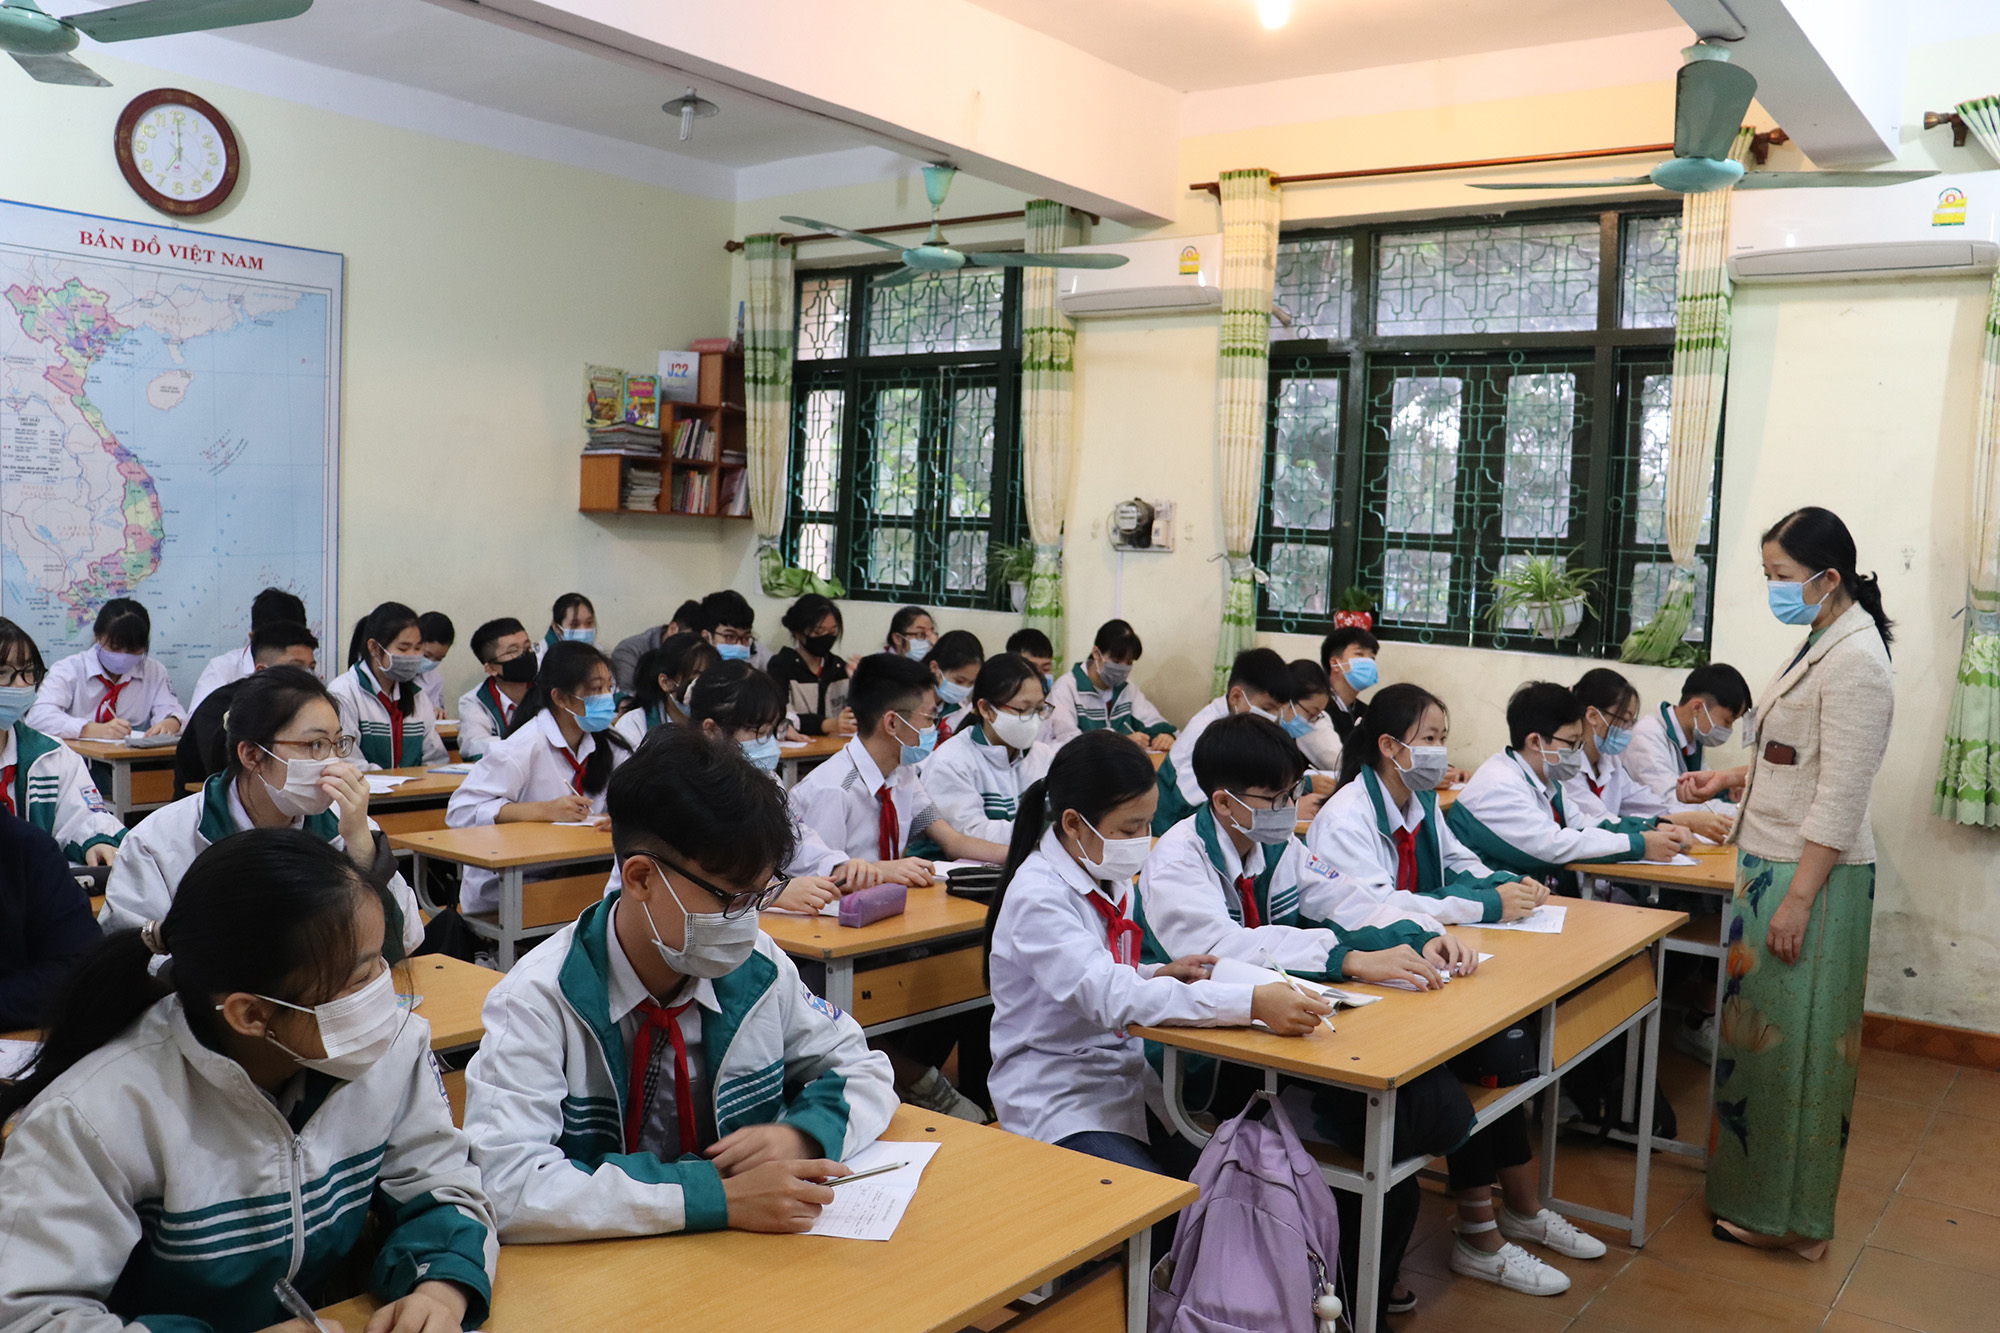 Hiện nay, trên 30.000 học sinh từ Tiểu học, THCS, THPT, Cao Đẳng, Đại Học trên địa bàn TX Đông Triều đã bắt đầu quay trở lại trường học trong điều kiện đảm bảo nghiêm các biện pháp phòng chống dịch bệnh.